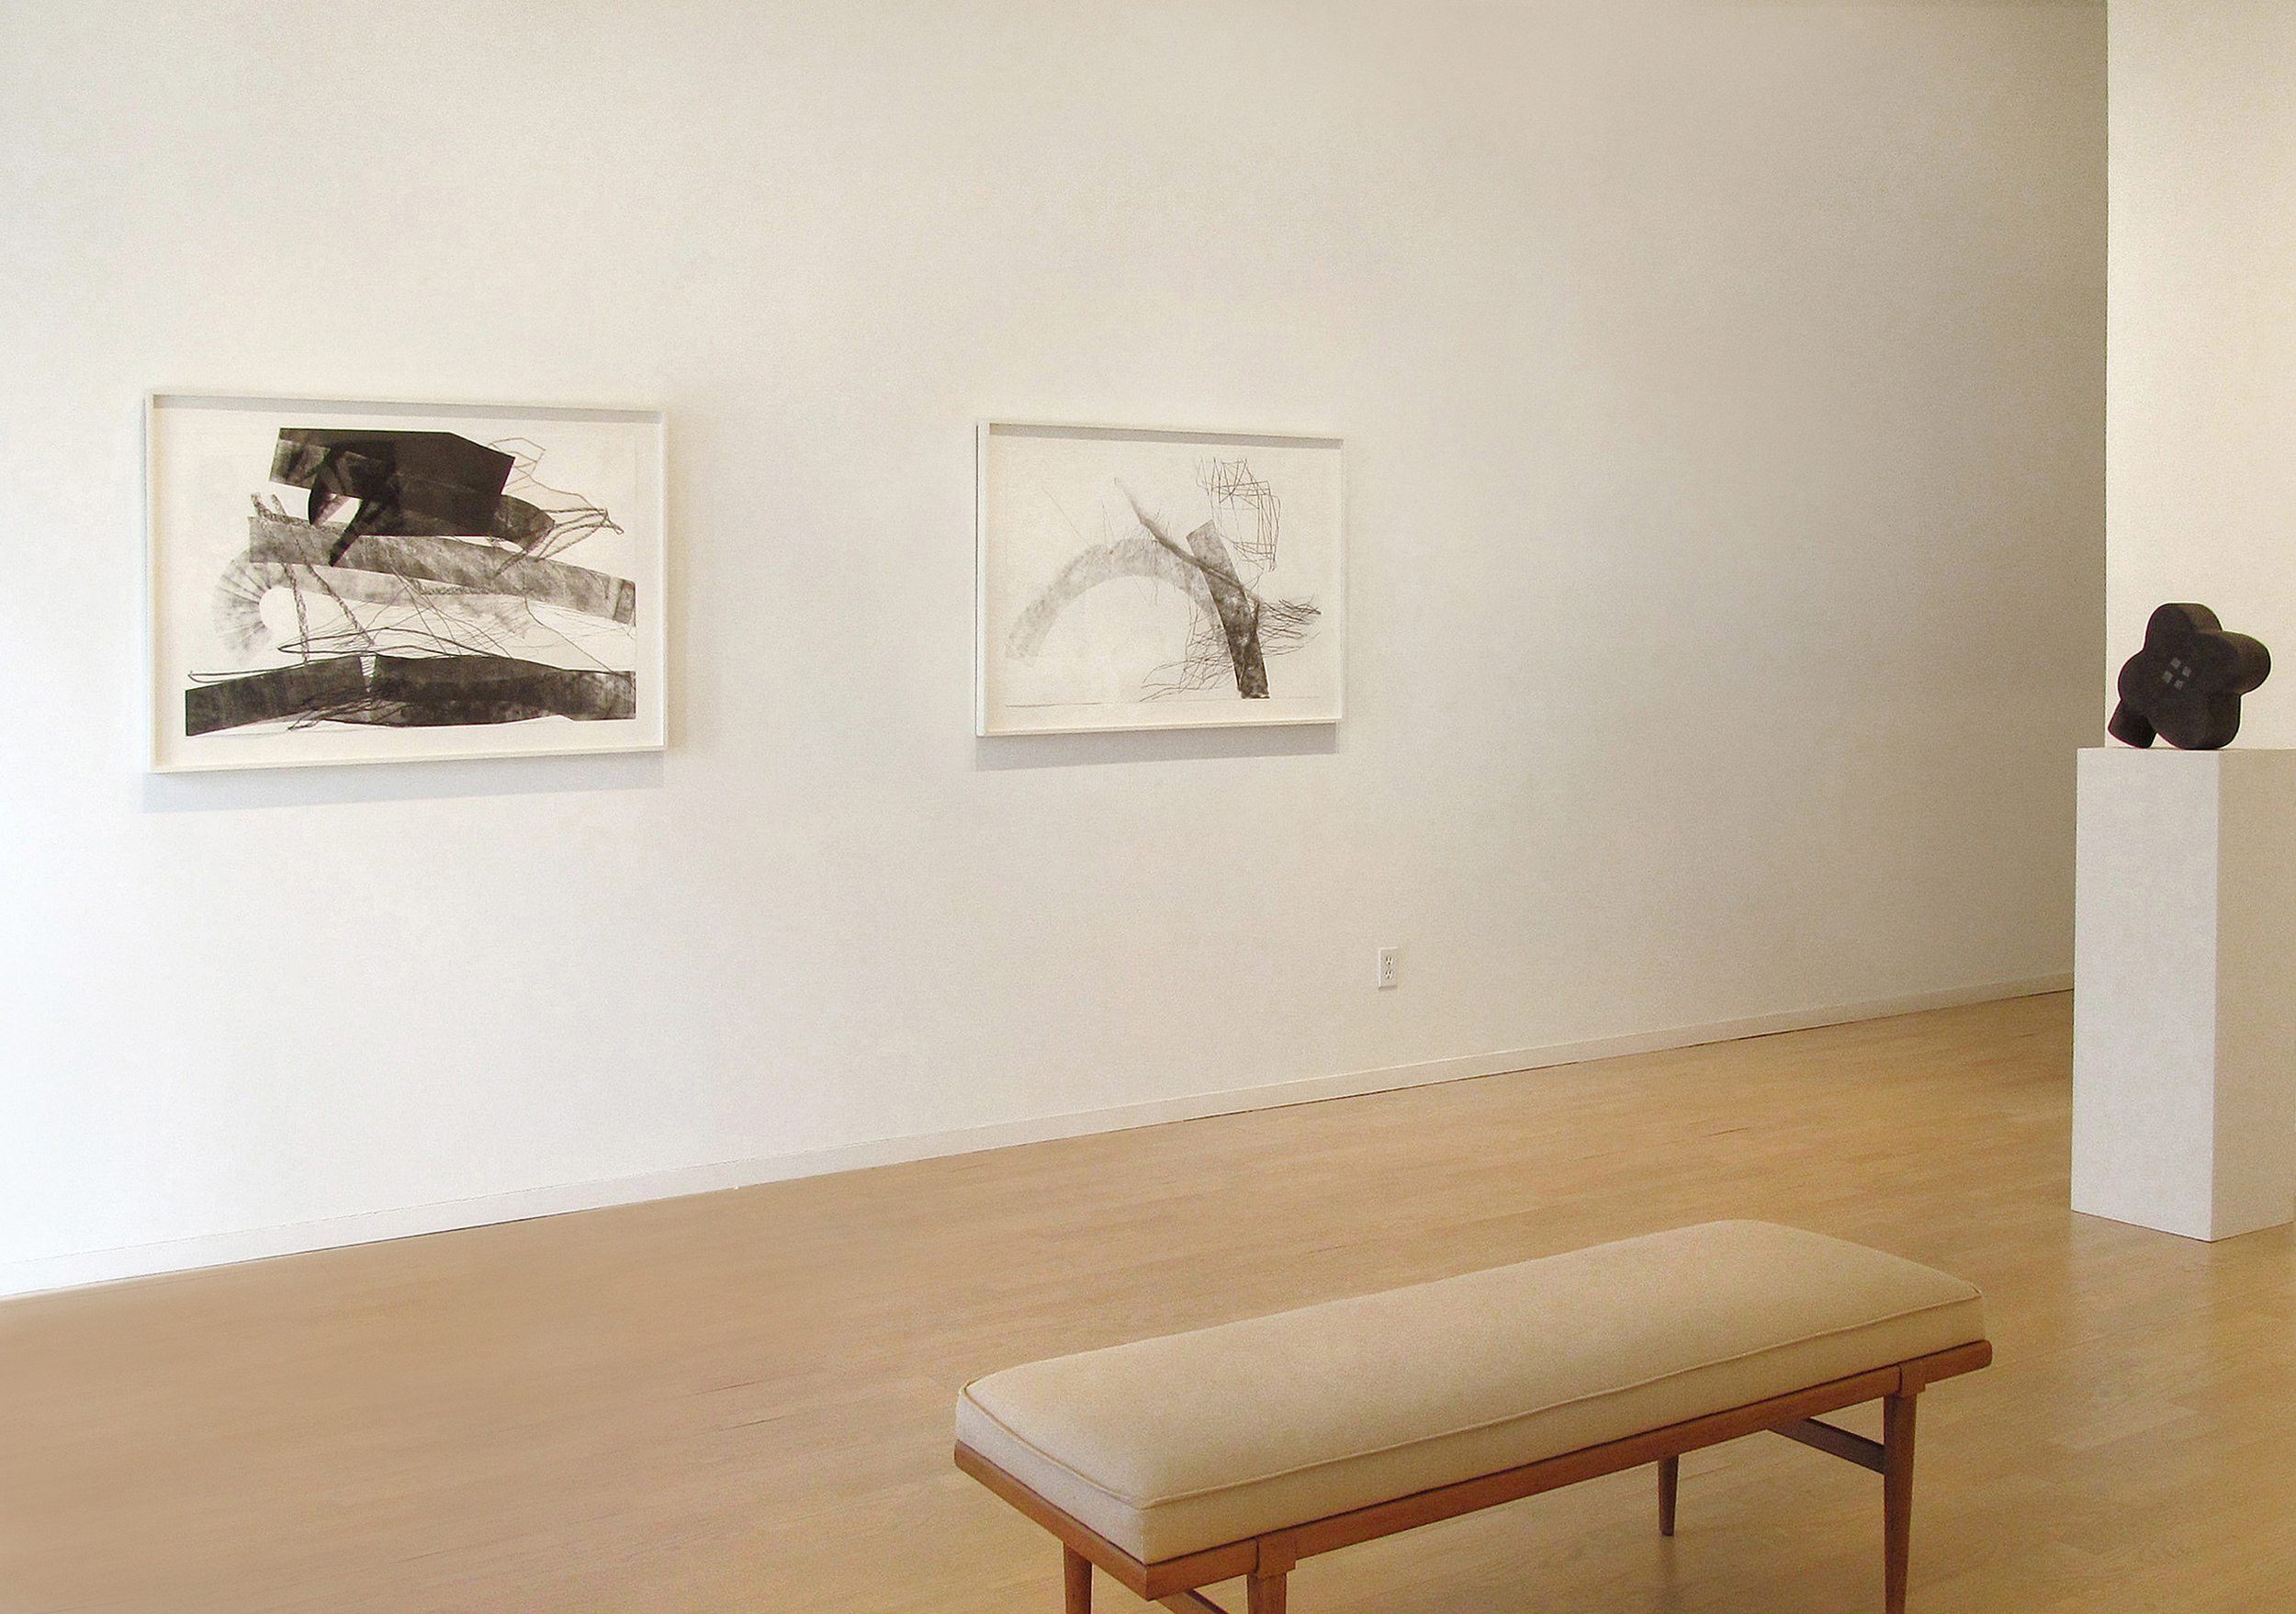    Christine Hiebert:&nbsp;Ten Drawings &nbsp;   The Drawing Room Gallery East Hampton, 2014  